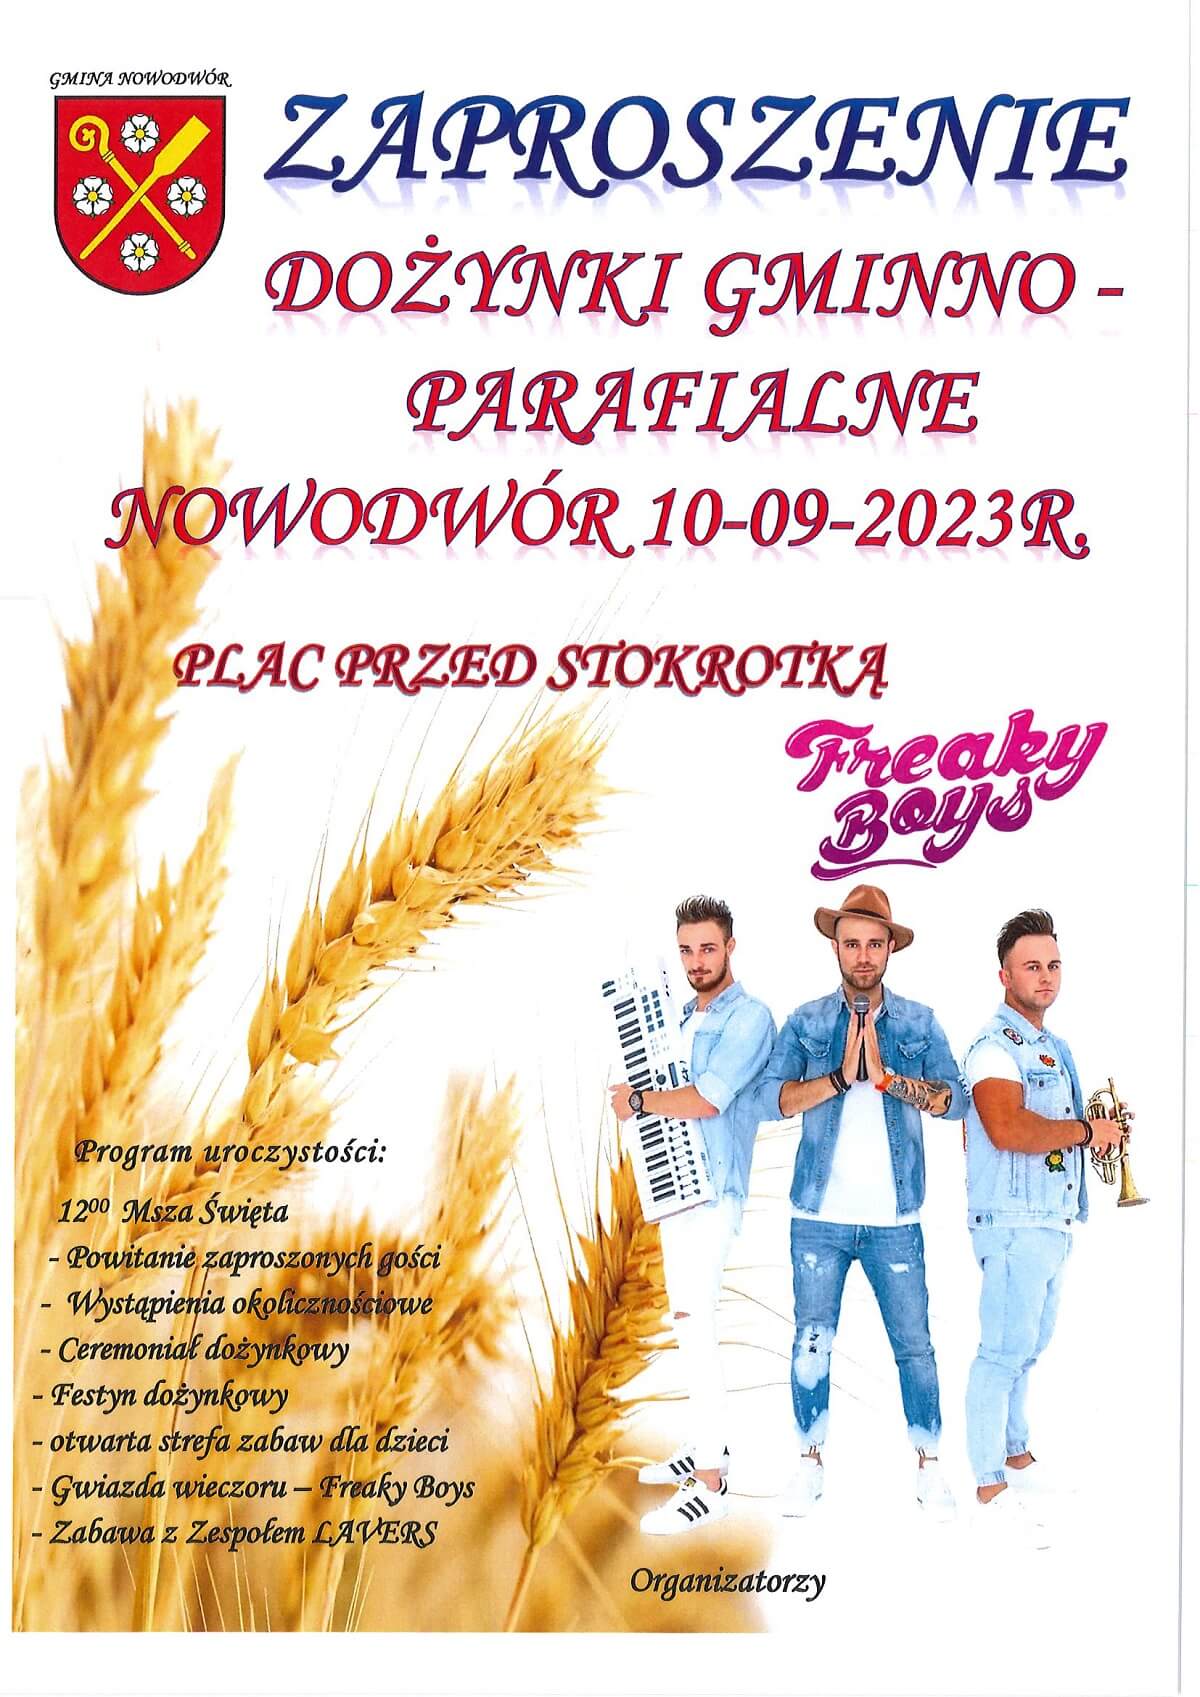 Dożynki w Nowodworze 2023 - plakat, program wydarzenia